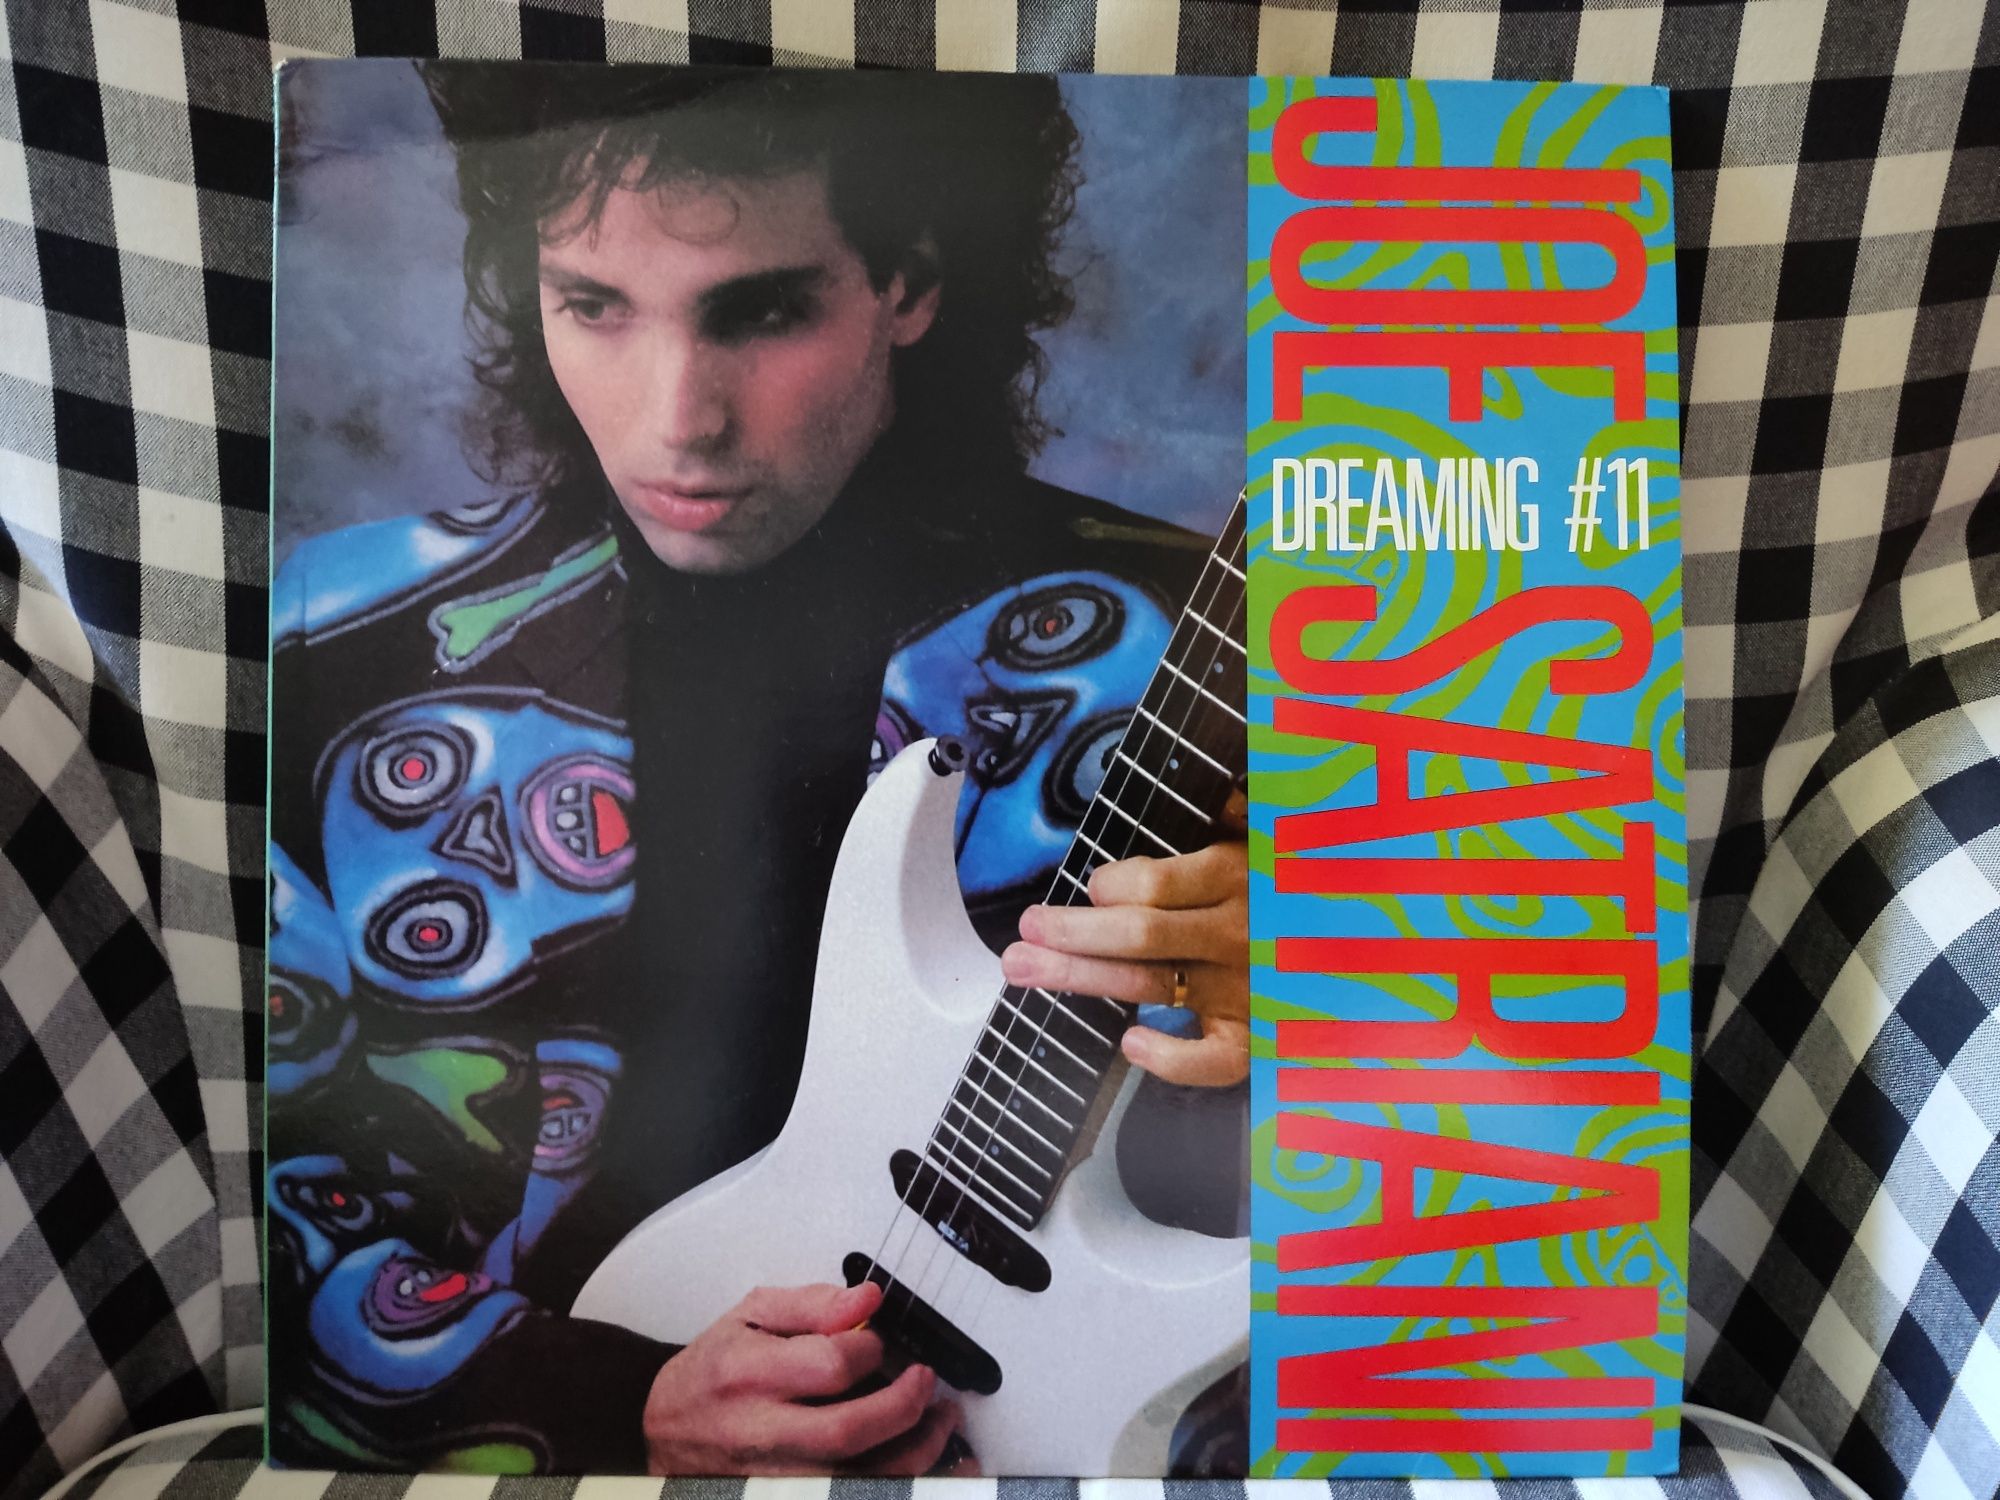 Joe Satriani Dreaming #11 Lp NM, wydanie Brytyjskie 1press